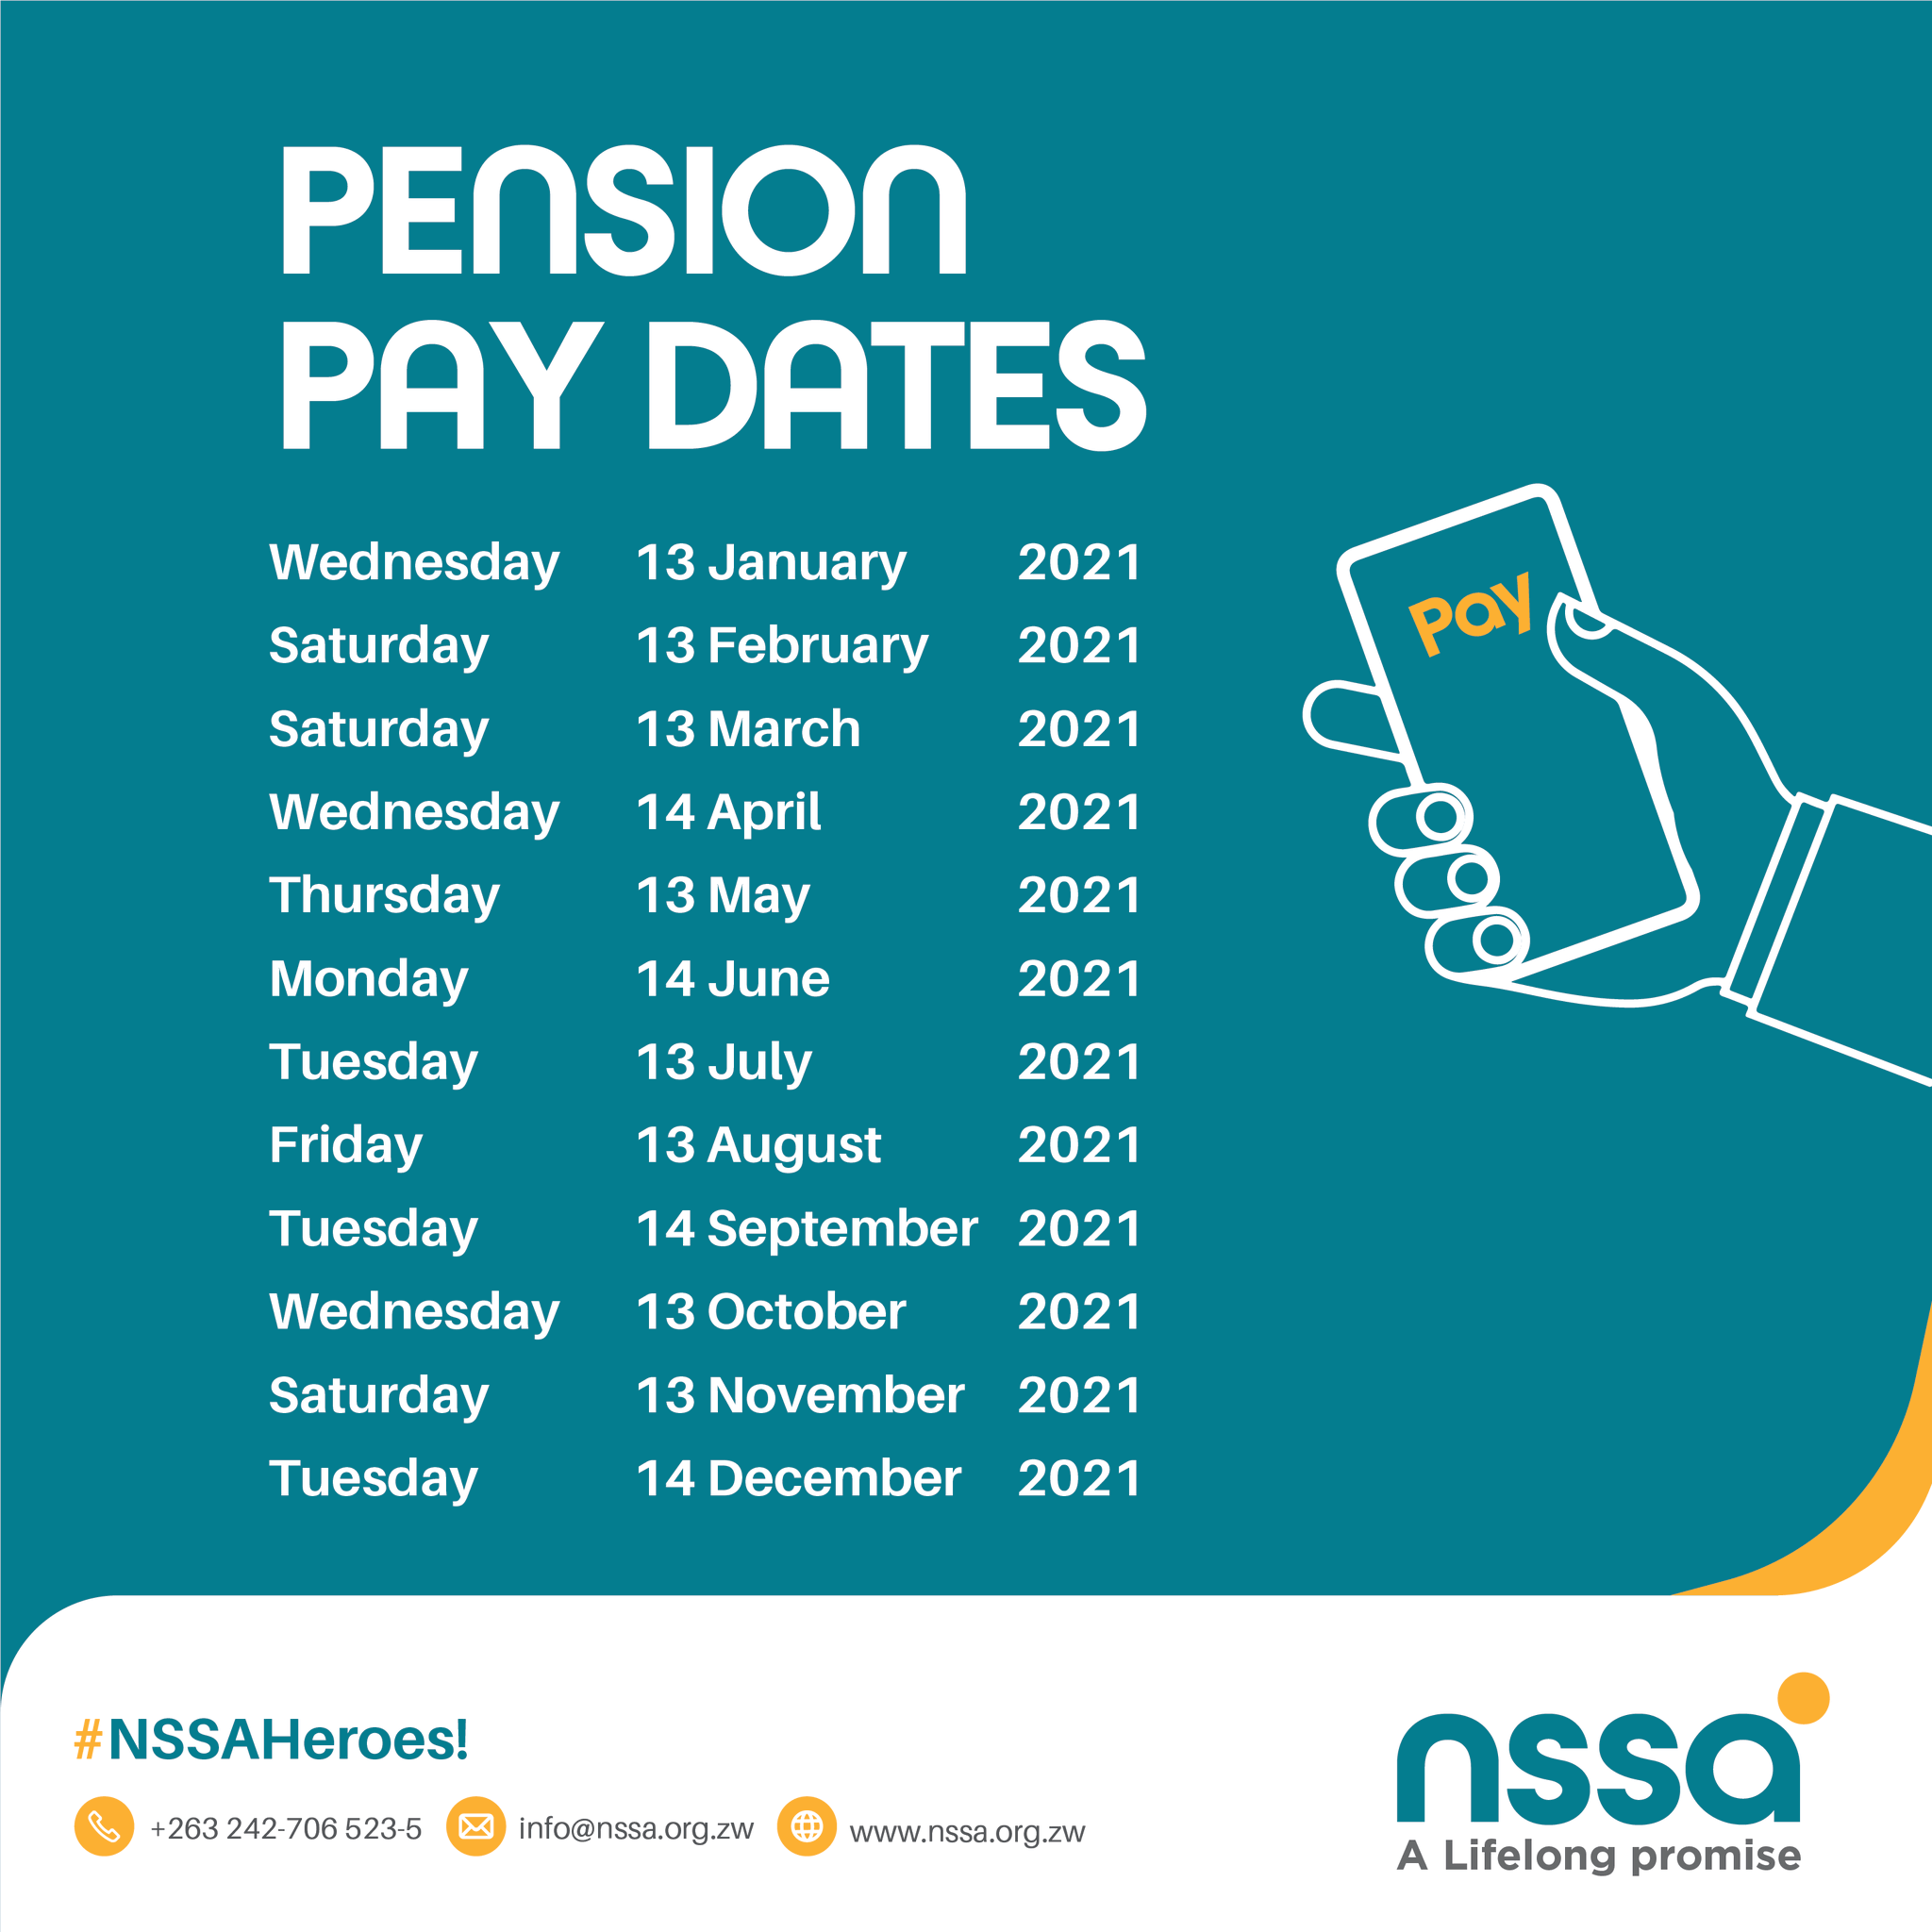 nssa-calendar-pension-pay-dates-pindula-news